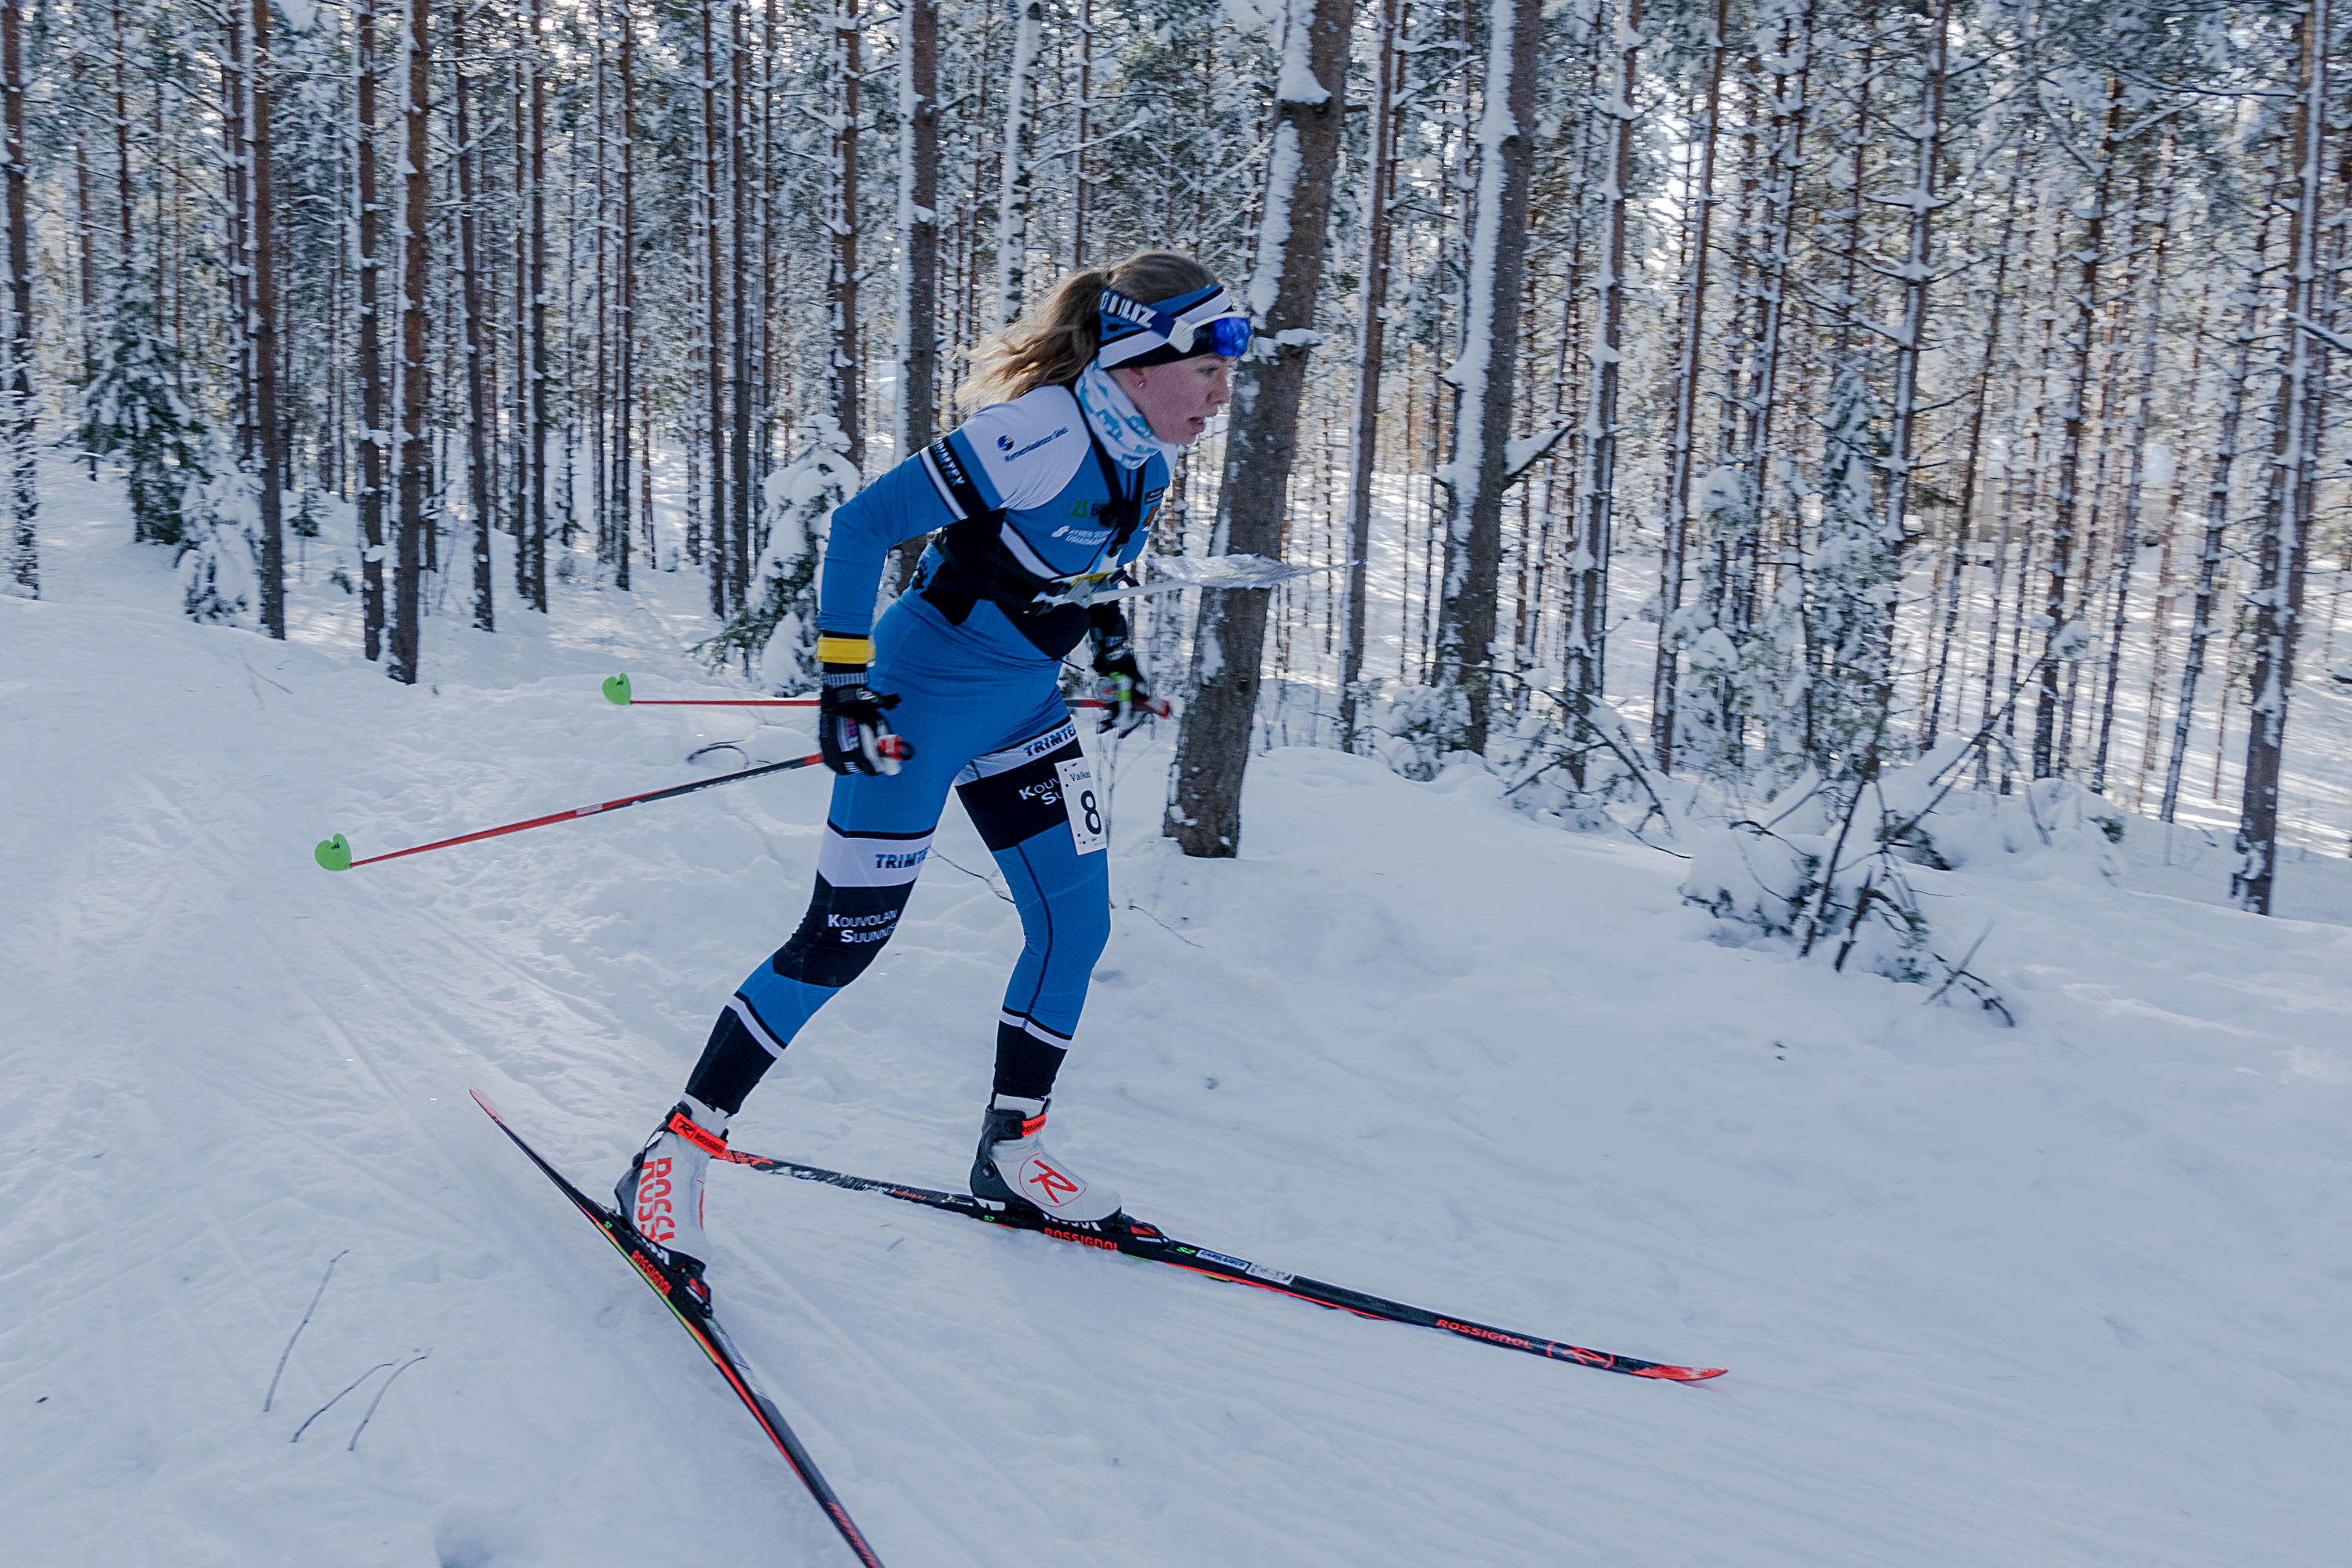 Tuuli Suutarin suksi kulki pronssille hiihtosuunnistuksen SM-sprinttimatkalla Pälkäneellä. Kuva seuraavan päivän SM-keskimatkan kisasta, jossa vauhti ei riittänyt kärkeen.